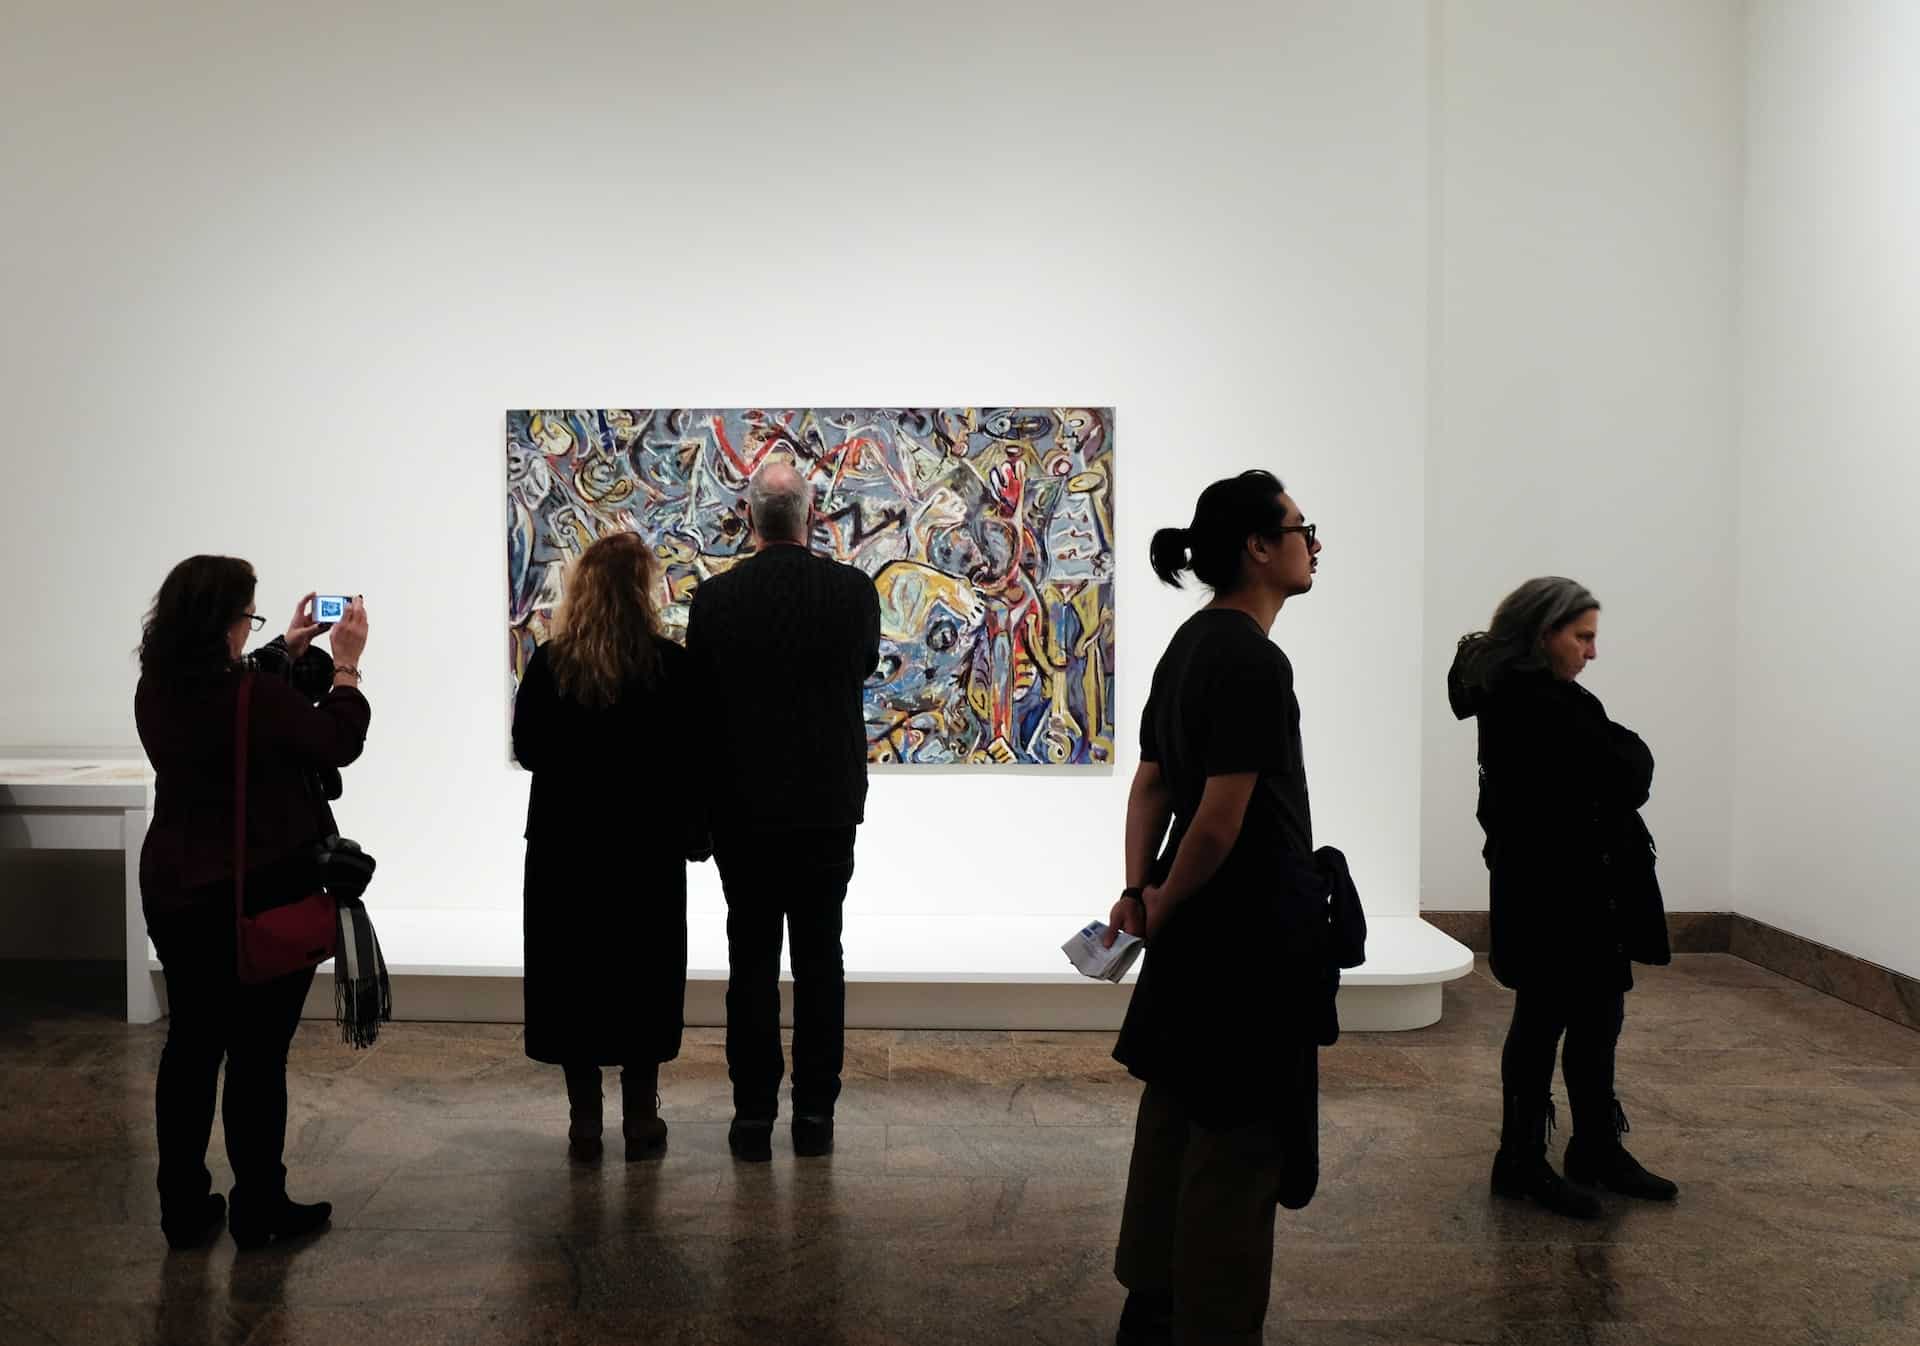 Groep mensen in het museum, met op de achtergrond een abstract schilderij.